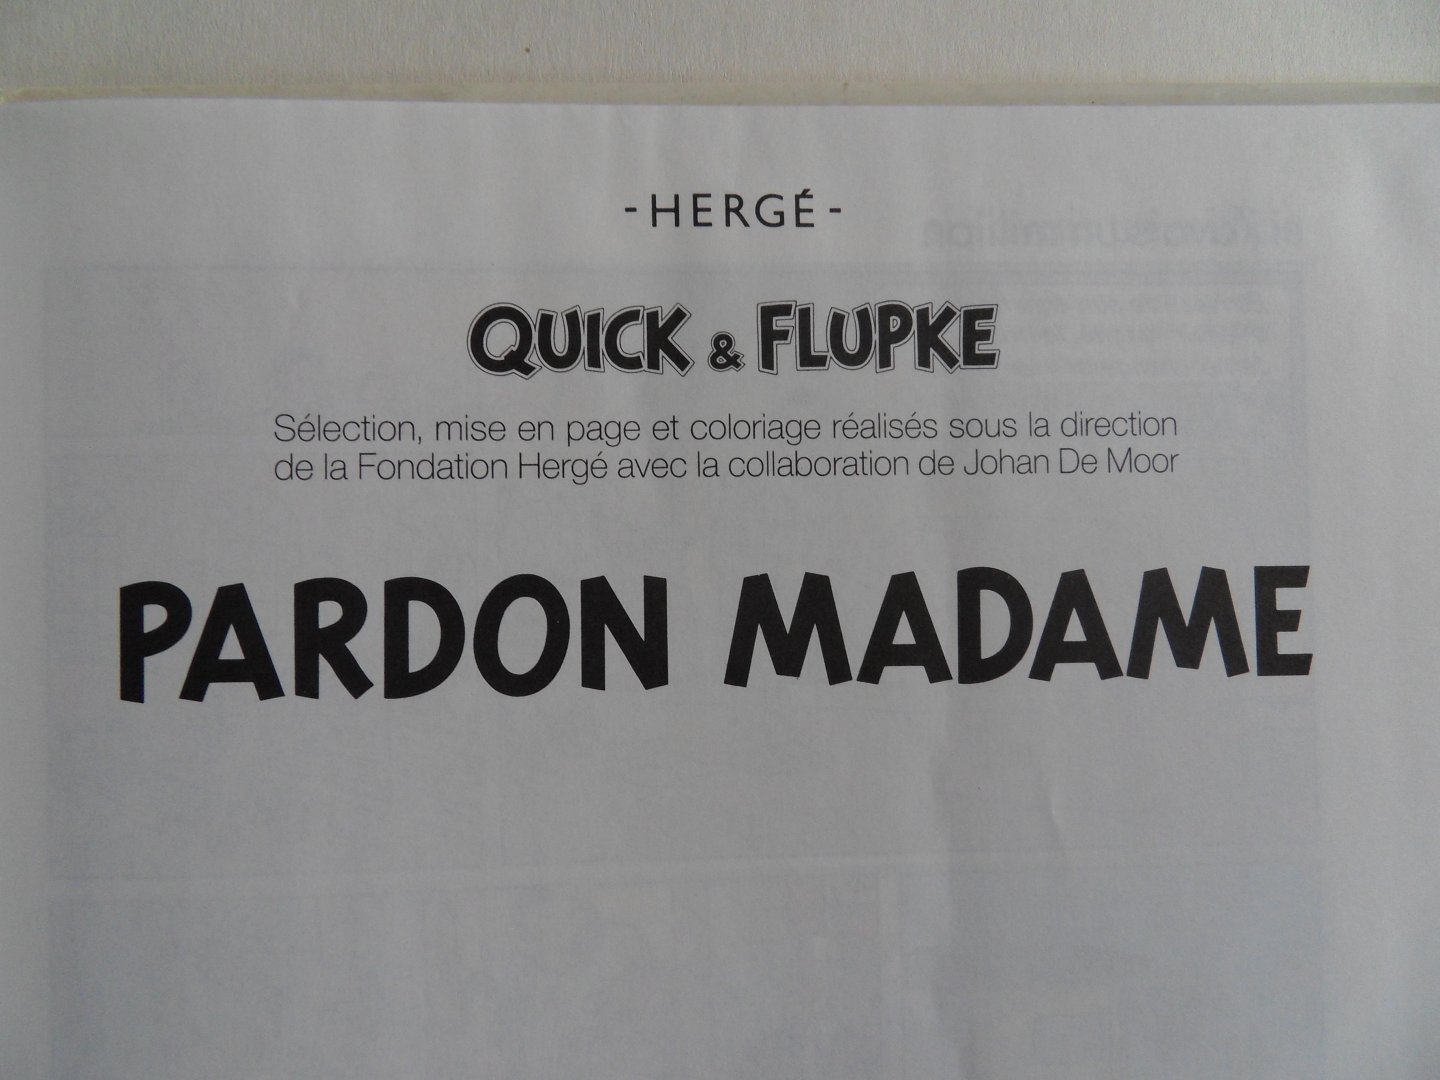 Hergé [ in samenwerking met Johan de Moor ]. - Quick & Flupke. - Pardon Madame.